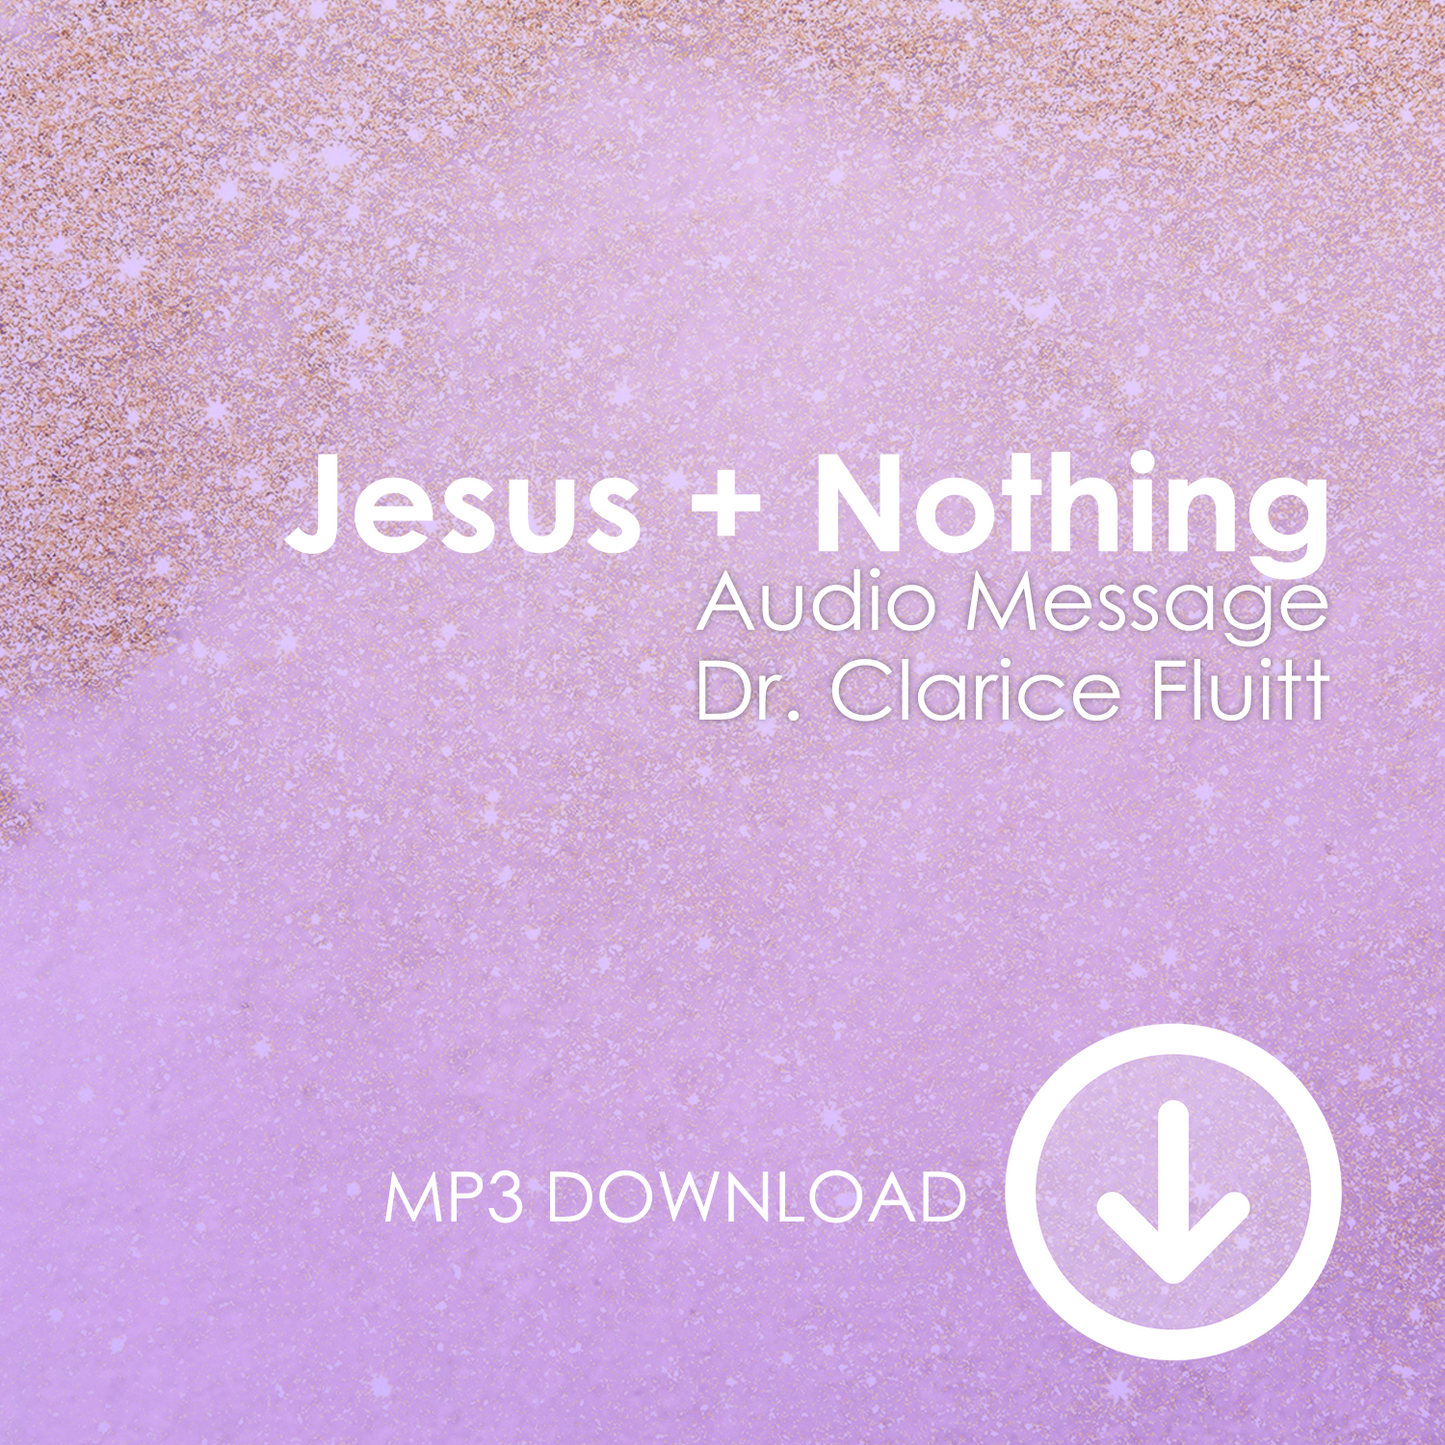 Jesus + Nothing MP3